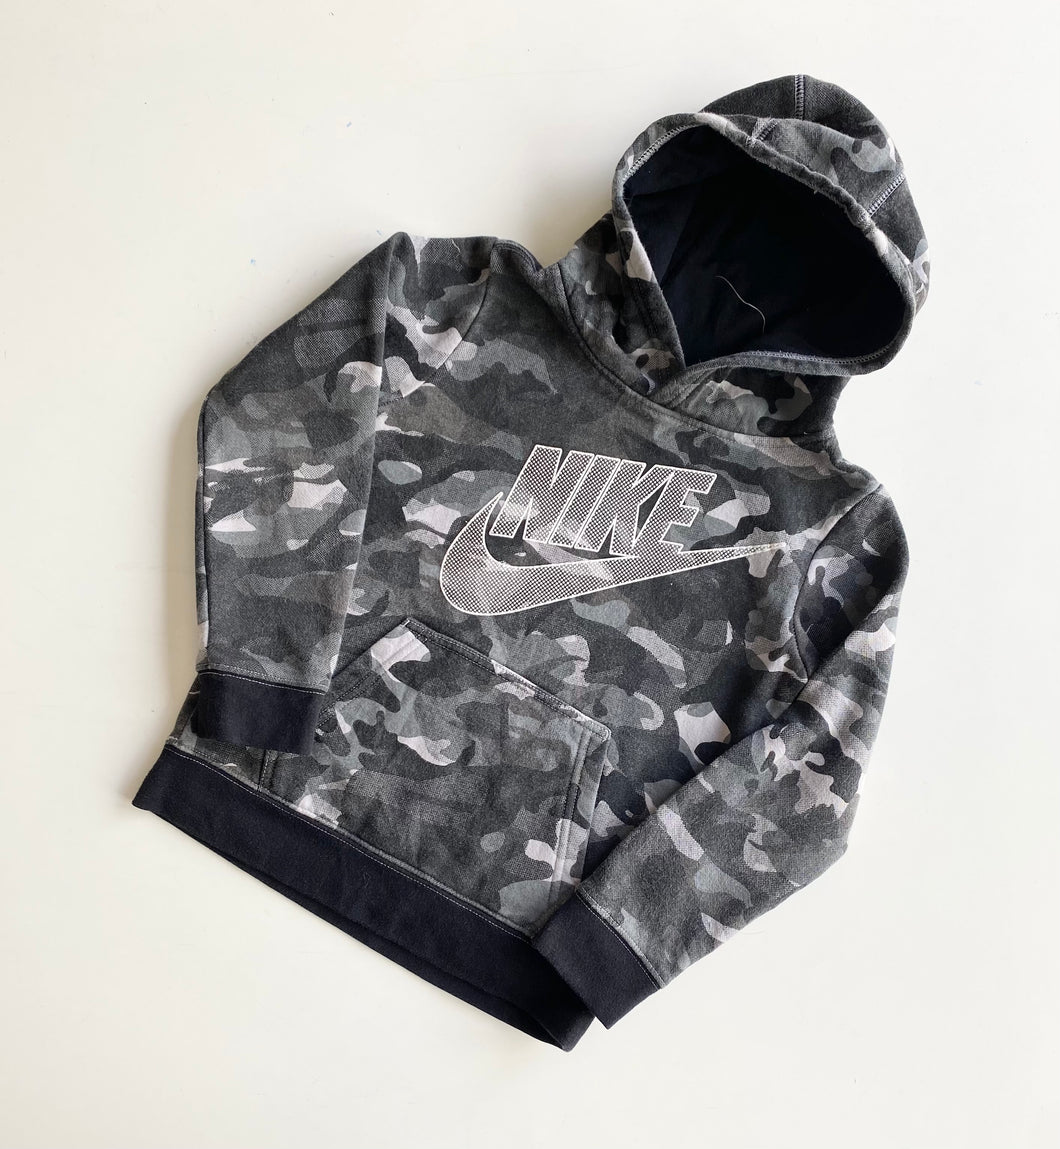 Nike hoodie (Age 7)